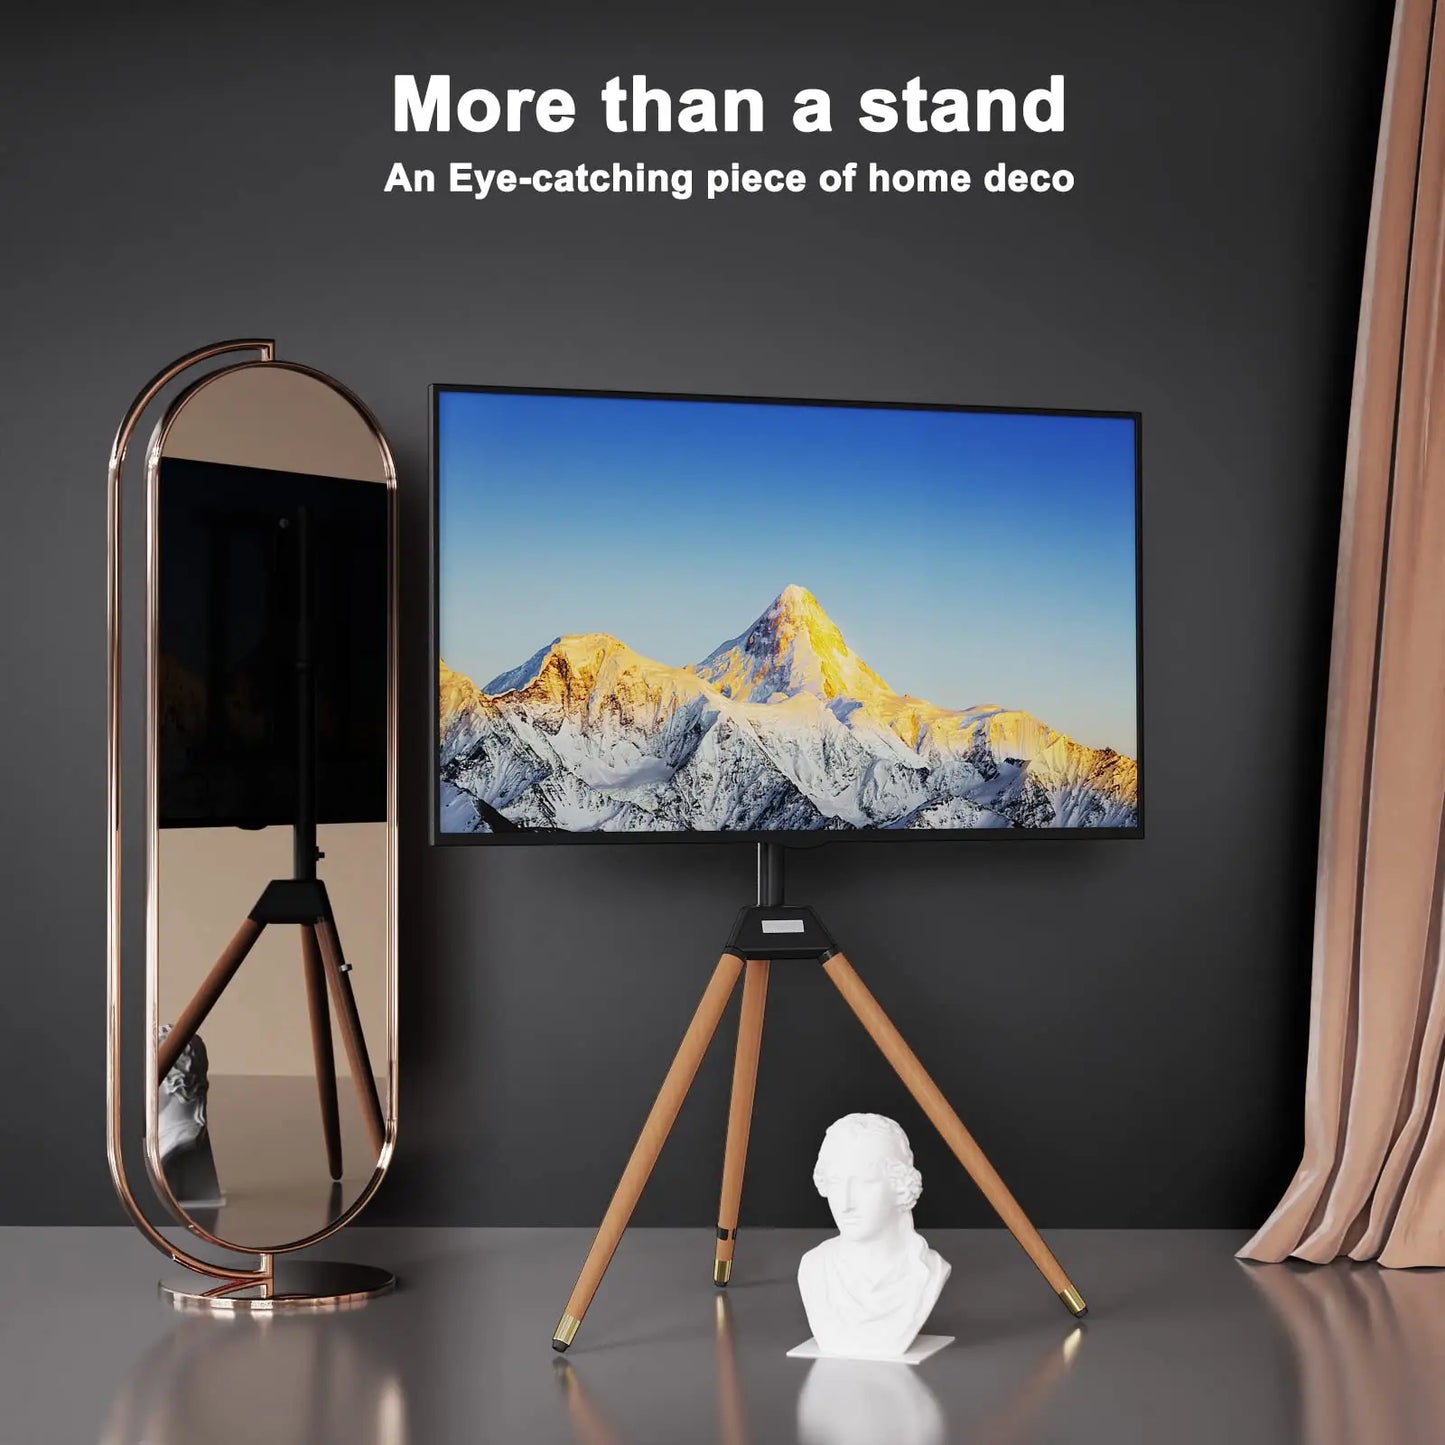 Easel TV Floor Stand for Most 32-60 Inch Screens PUTORSEN